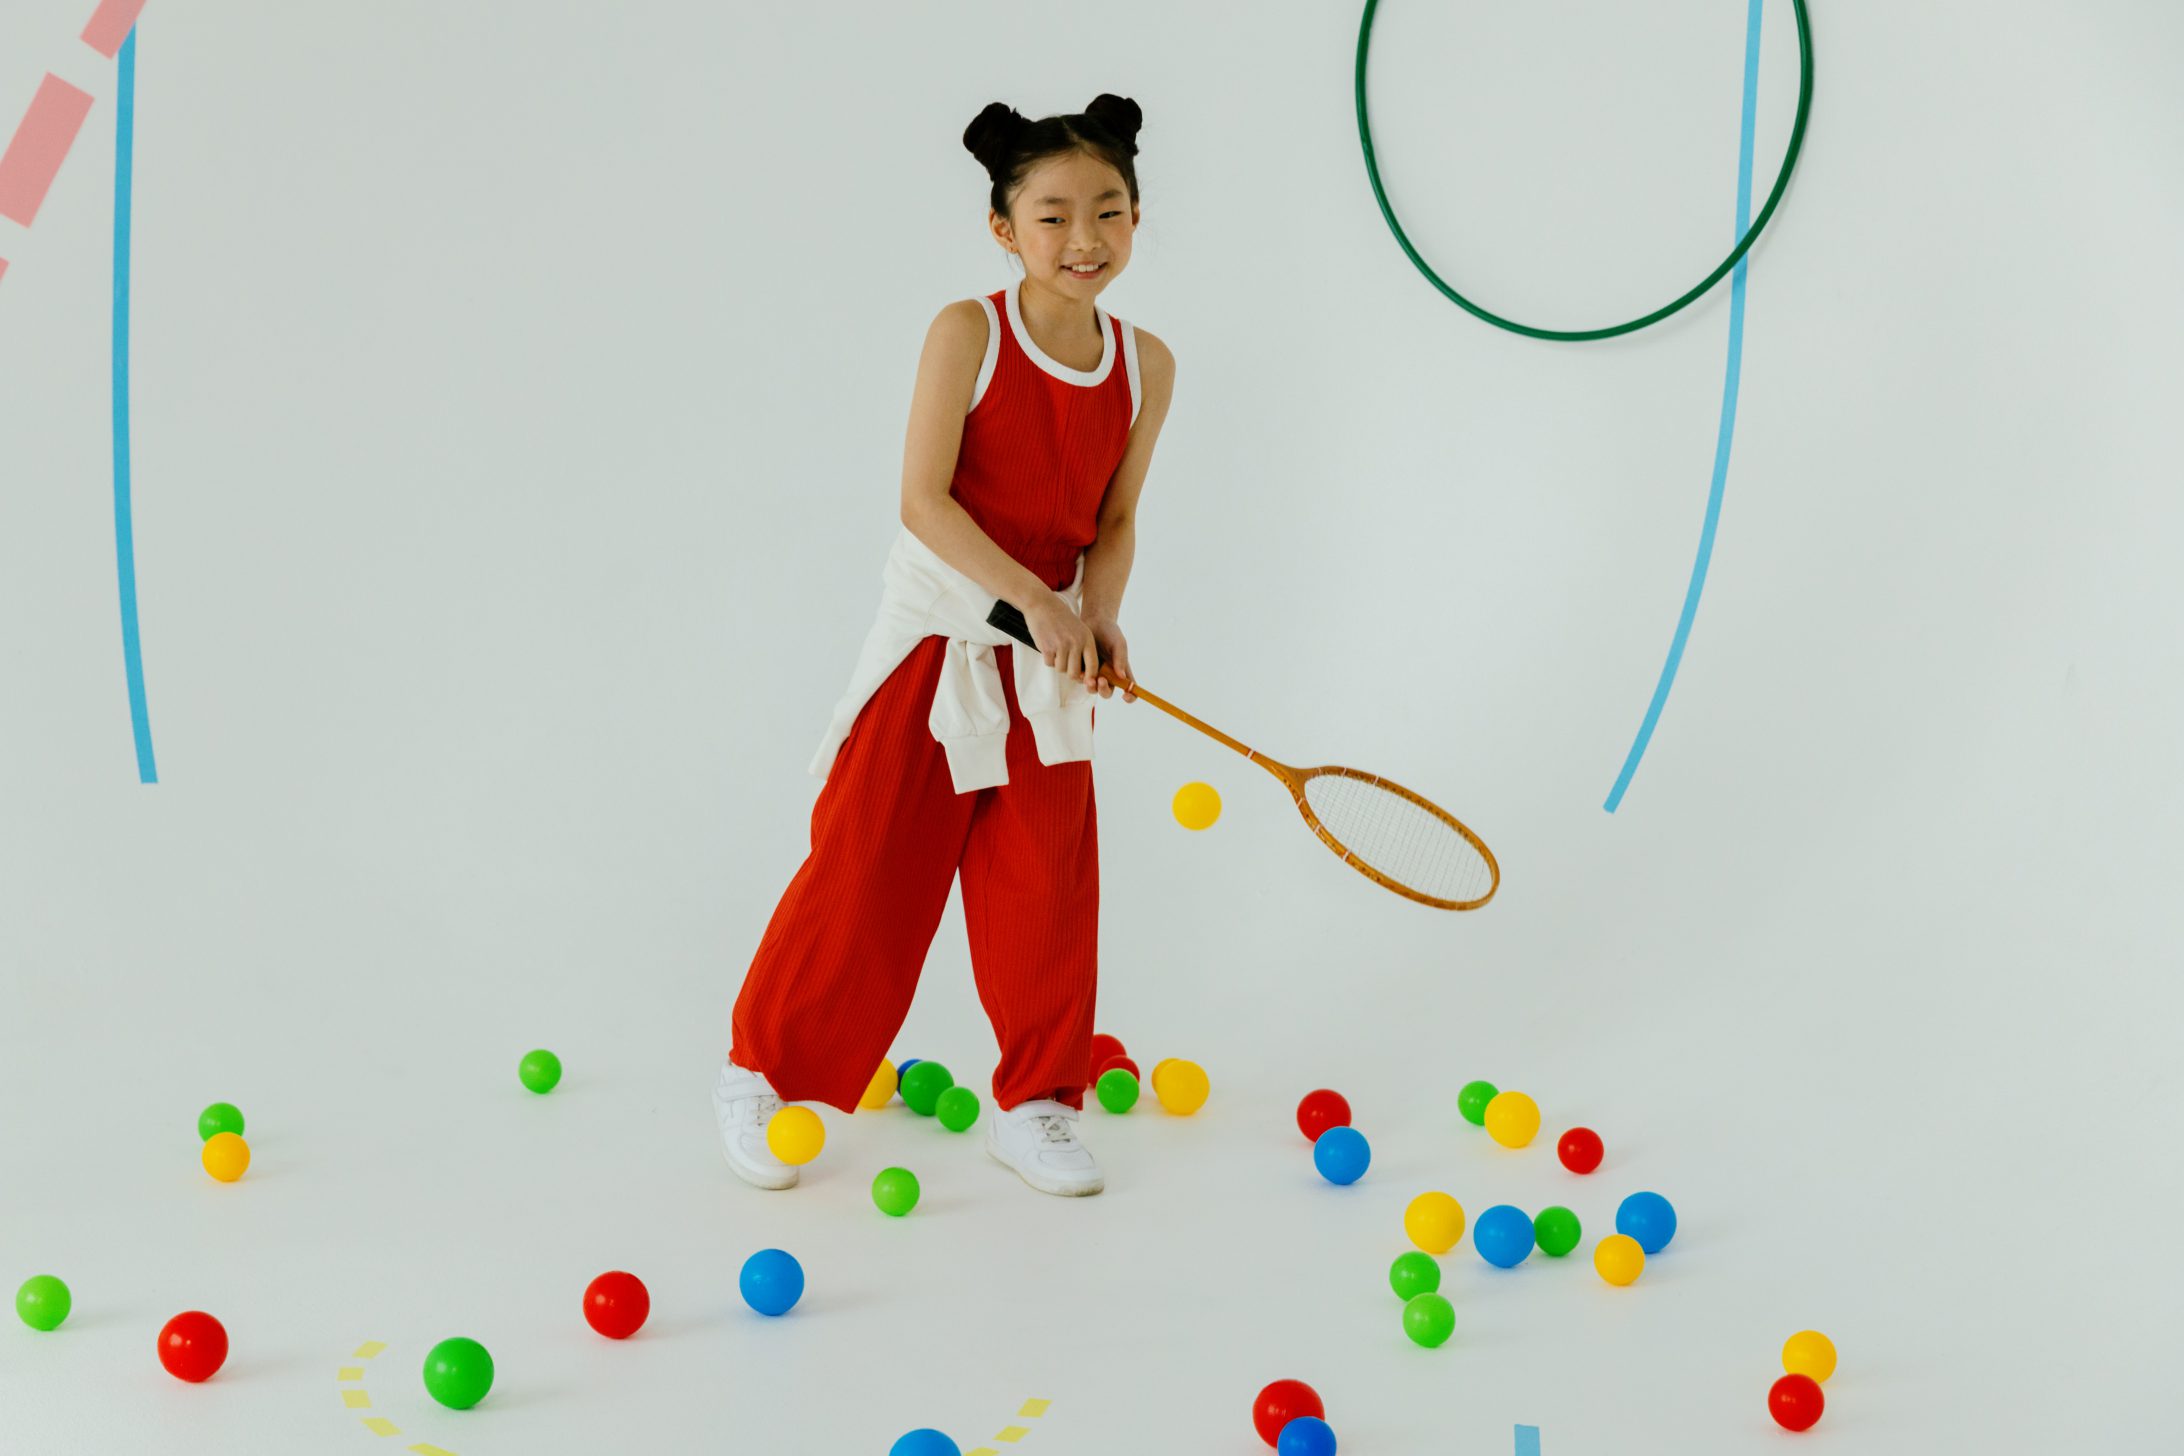 Une fille sur fond blanc, avec une raquette de badminton à la main et des boules au sol. 